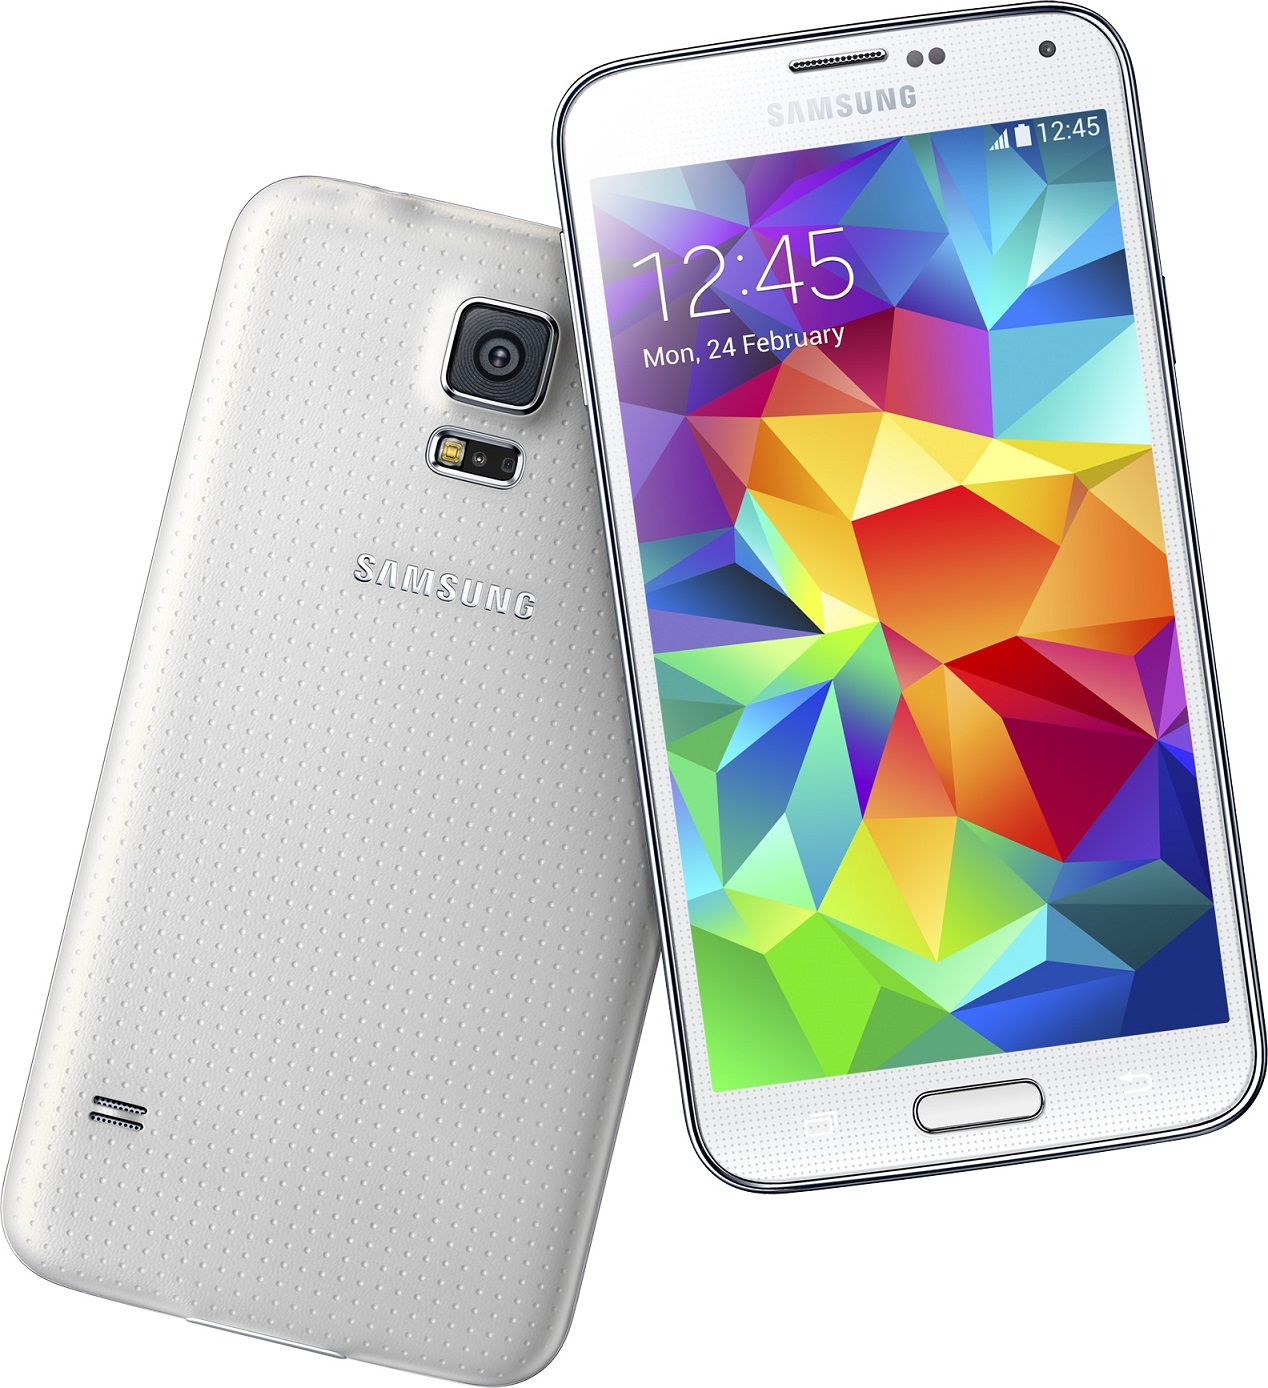 Mobilní telefon Samsung Galaxy S5 Neo Silver